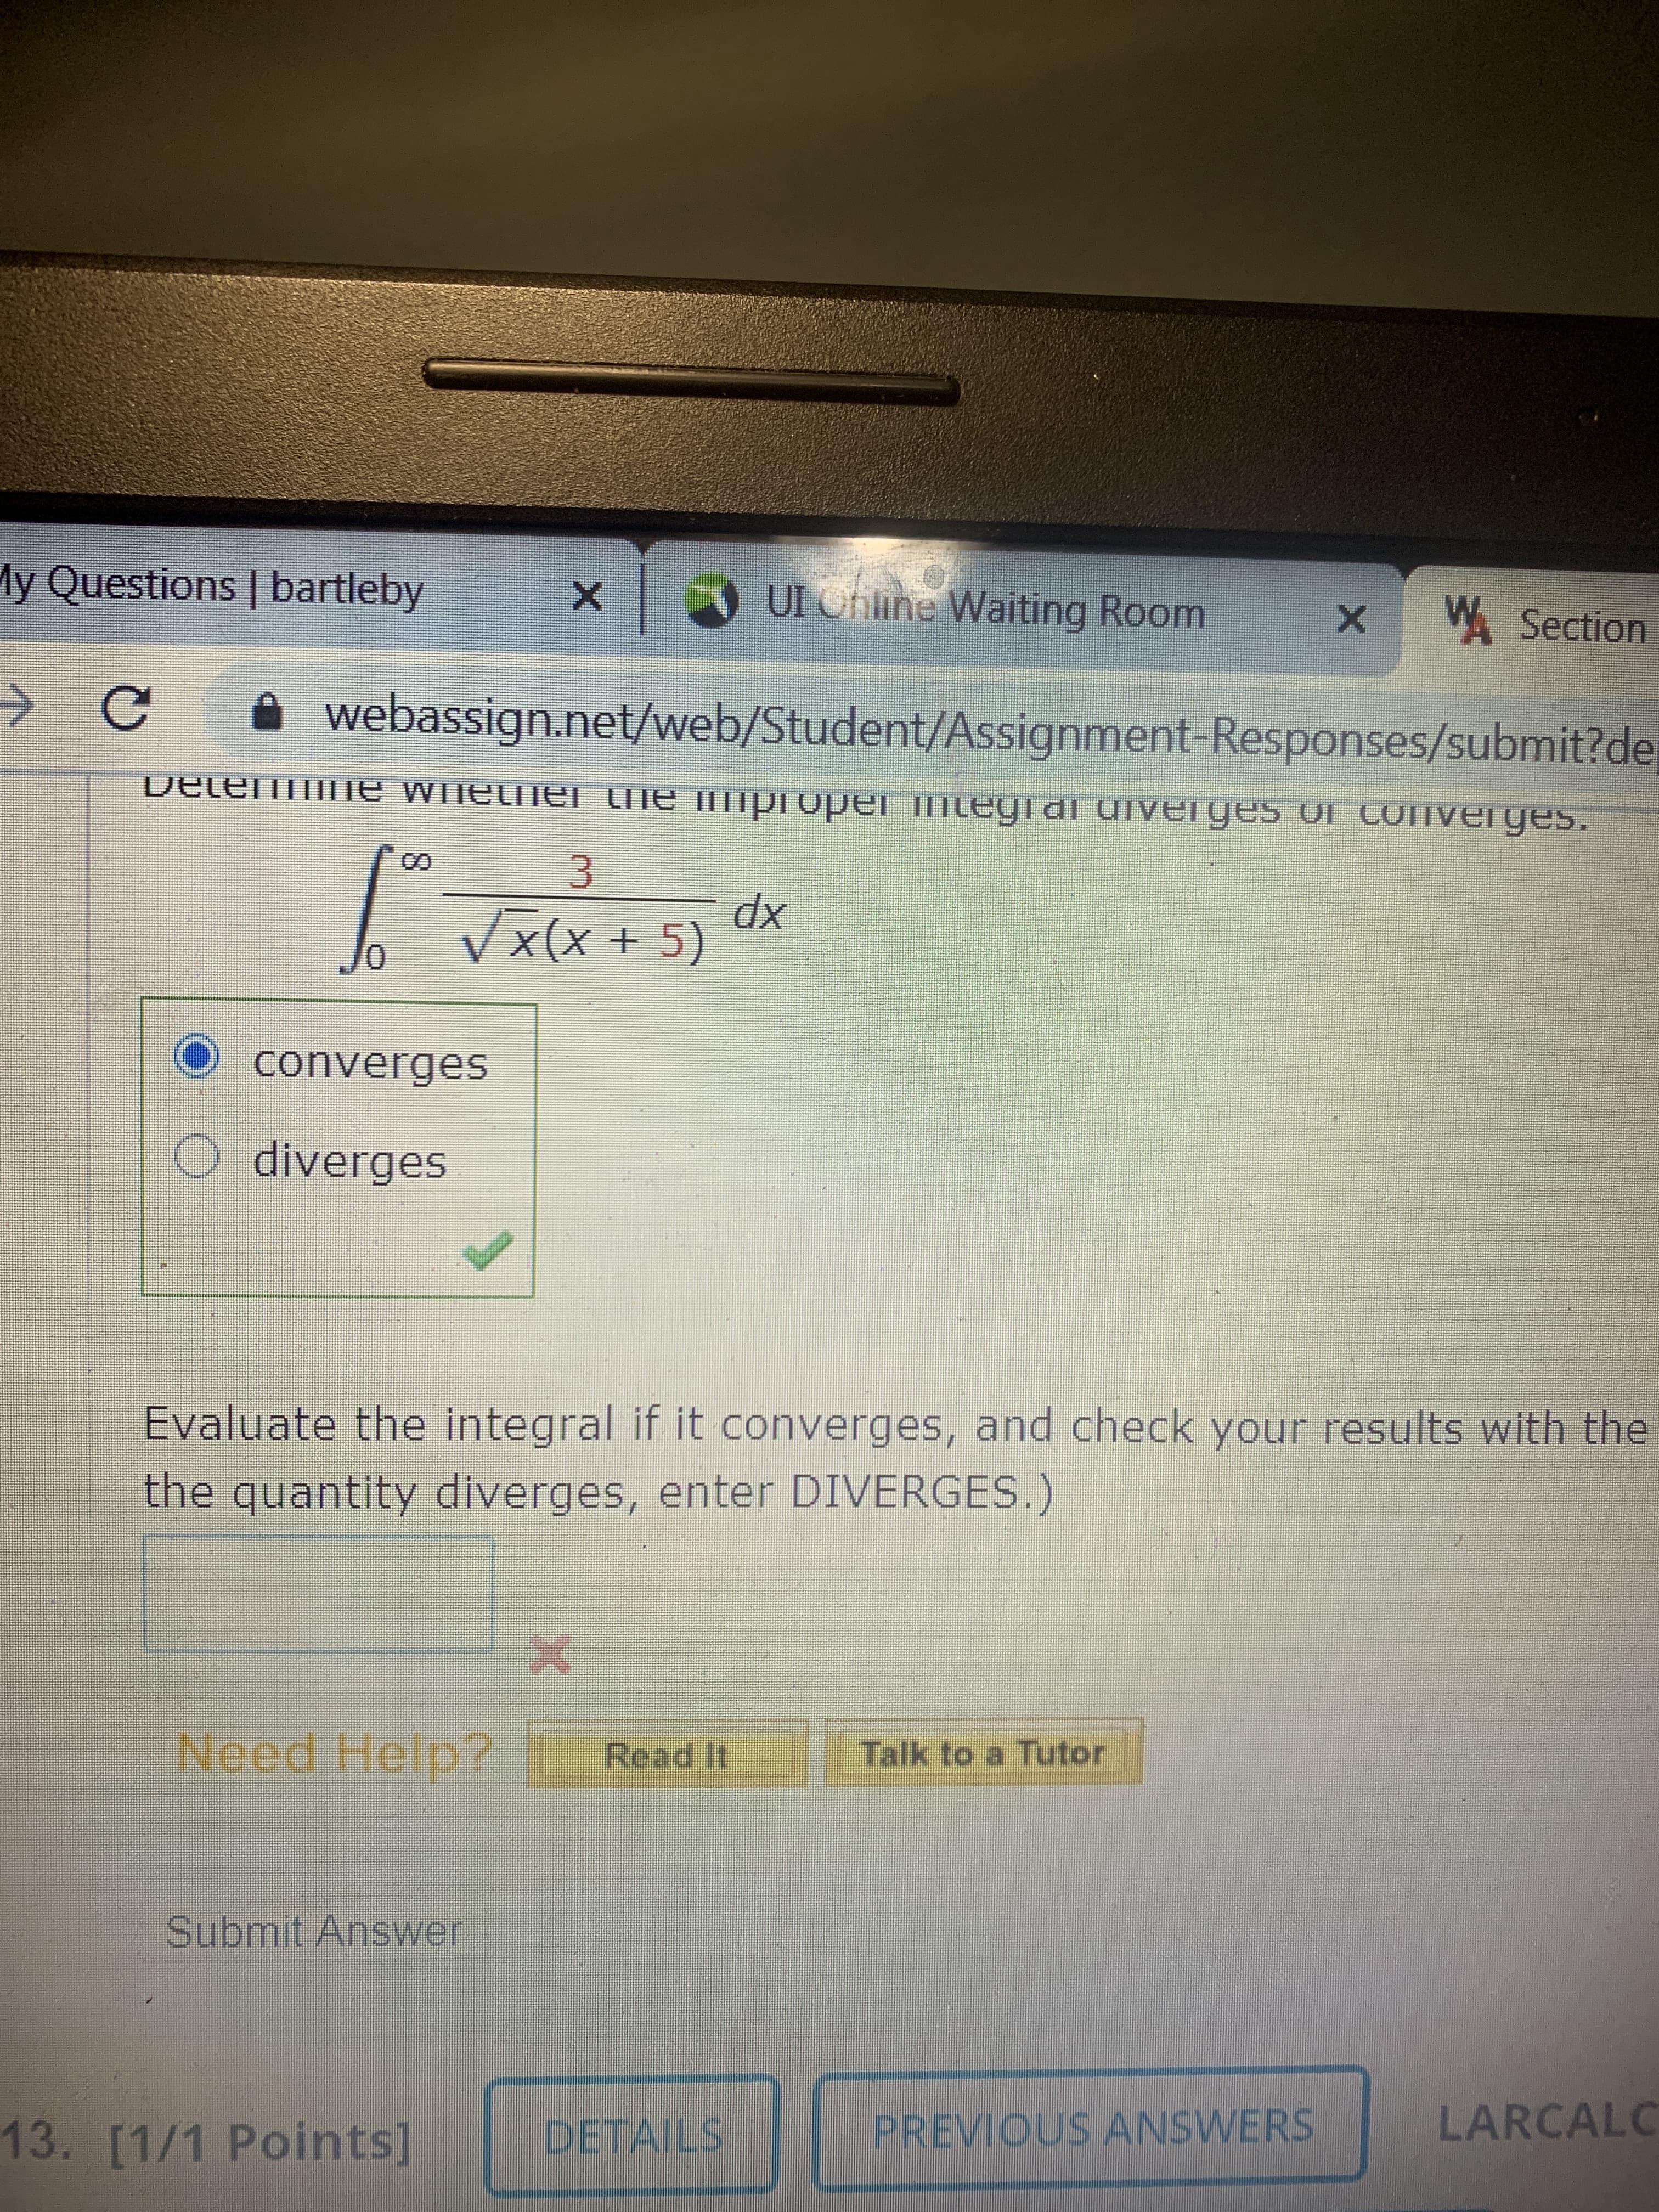 xp
Vx(x + 5)
converges
O diverges
